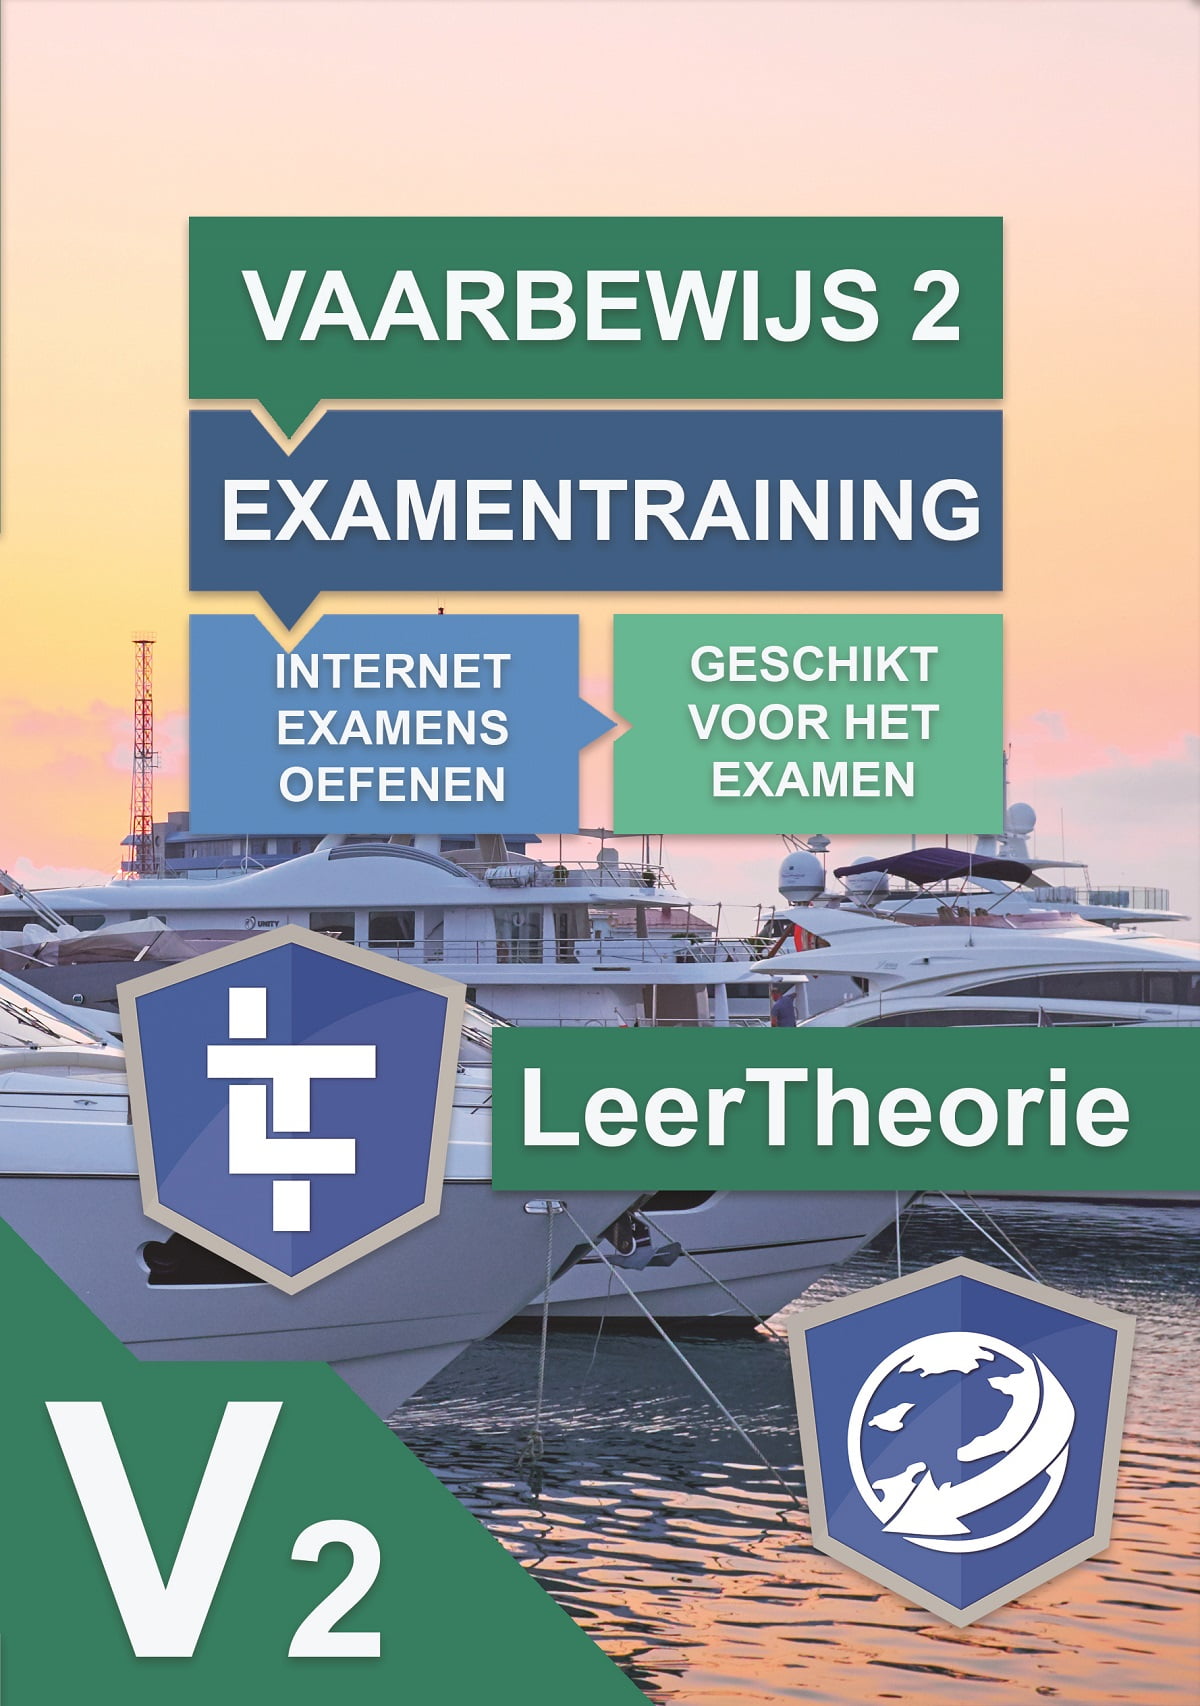 leertheorie.nl - Examentraining - Klein Vaarbewijs 2 - Nederland - KVB 2 - KVB2 - LeerTheorie